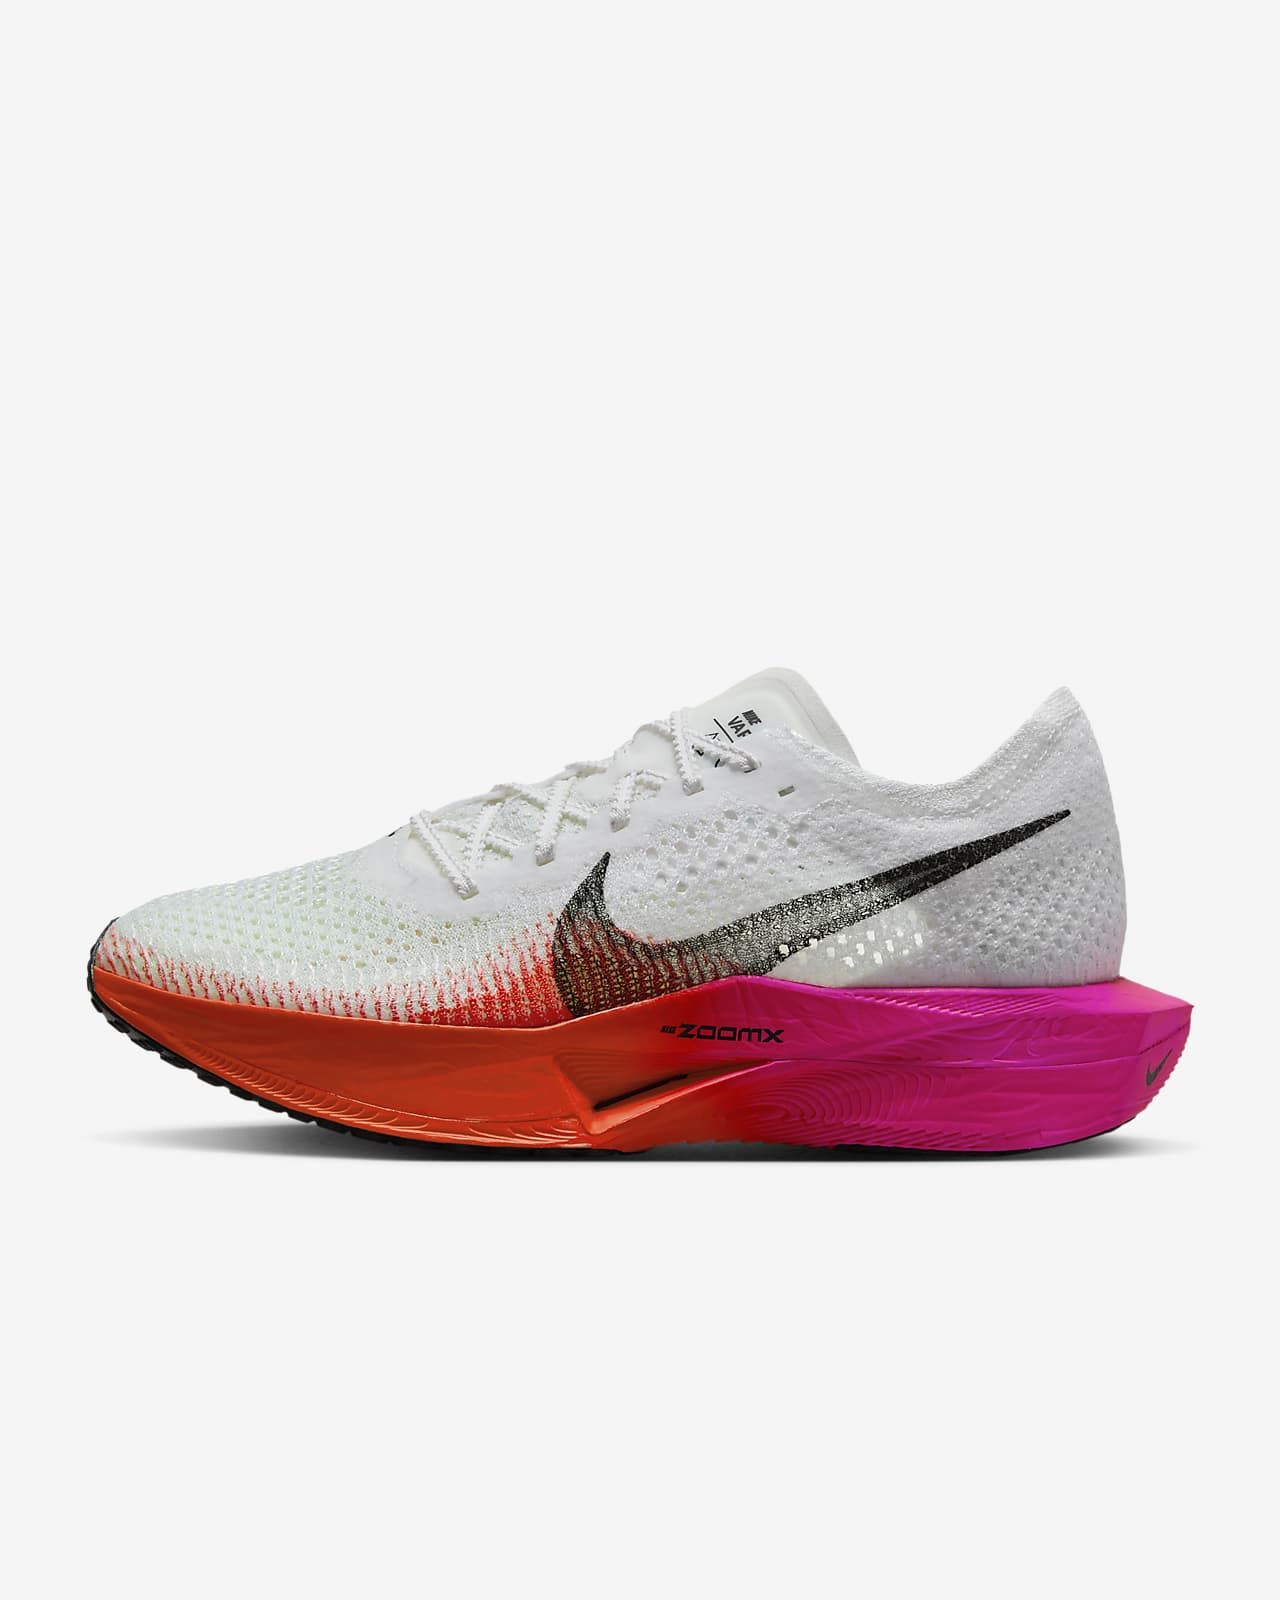 Nike Vaporfly 3 Women's Road Racing Shoes. Nike.com | Nike (US)